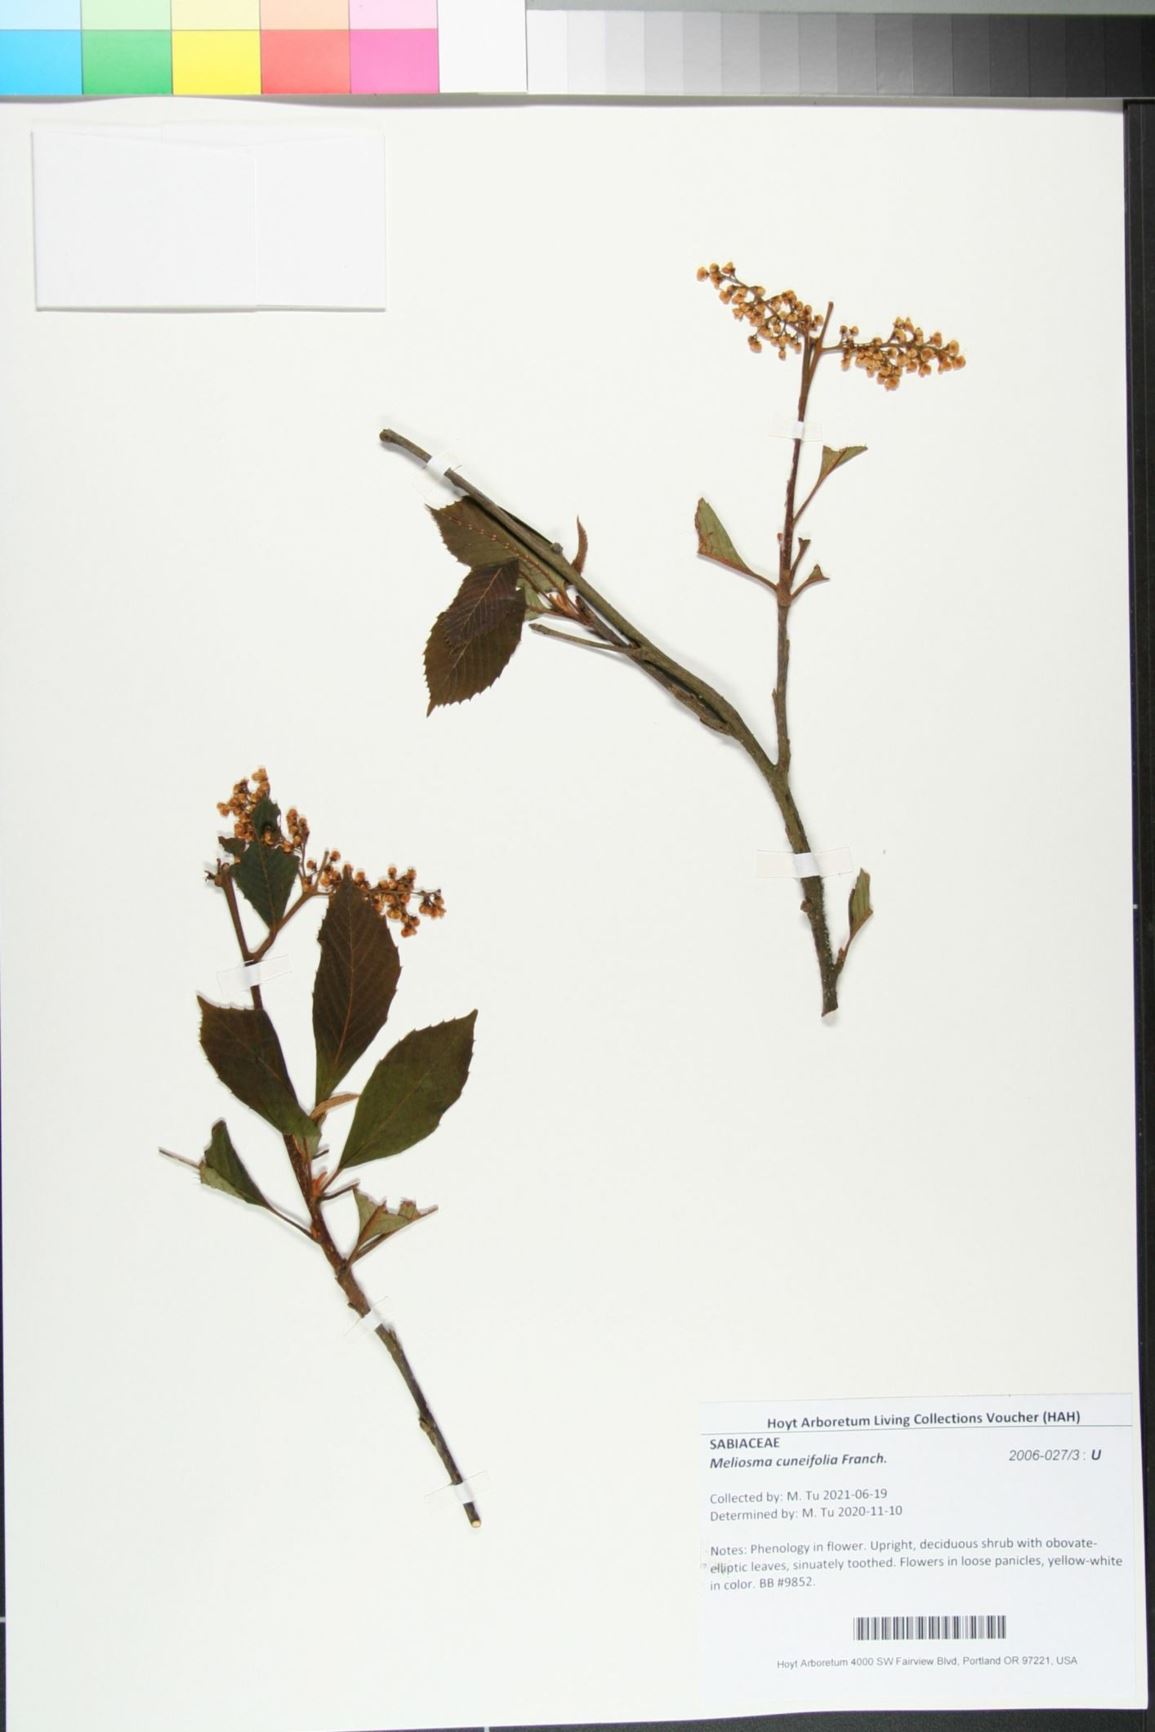 Meliosma cuneifolia